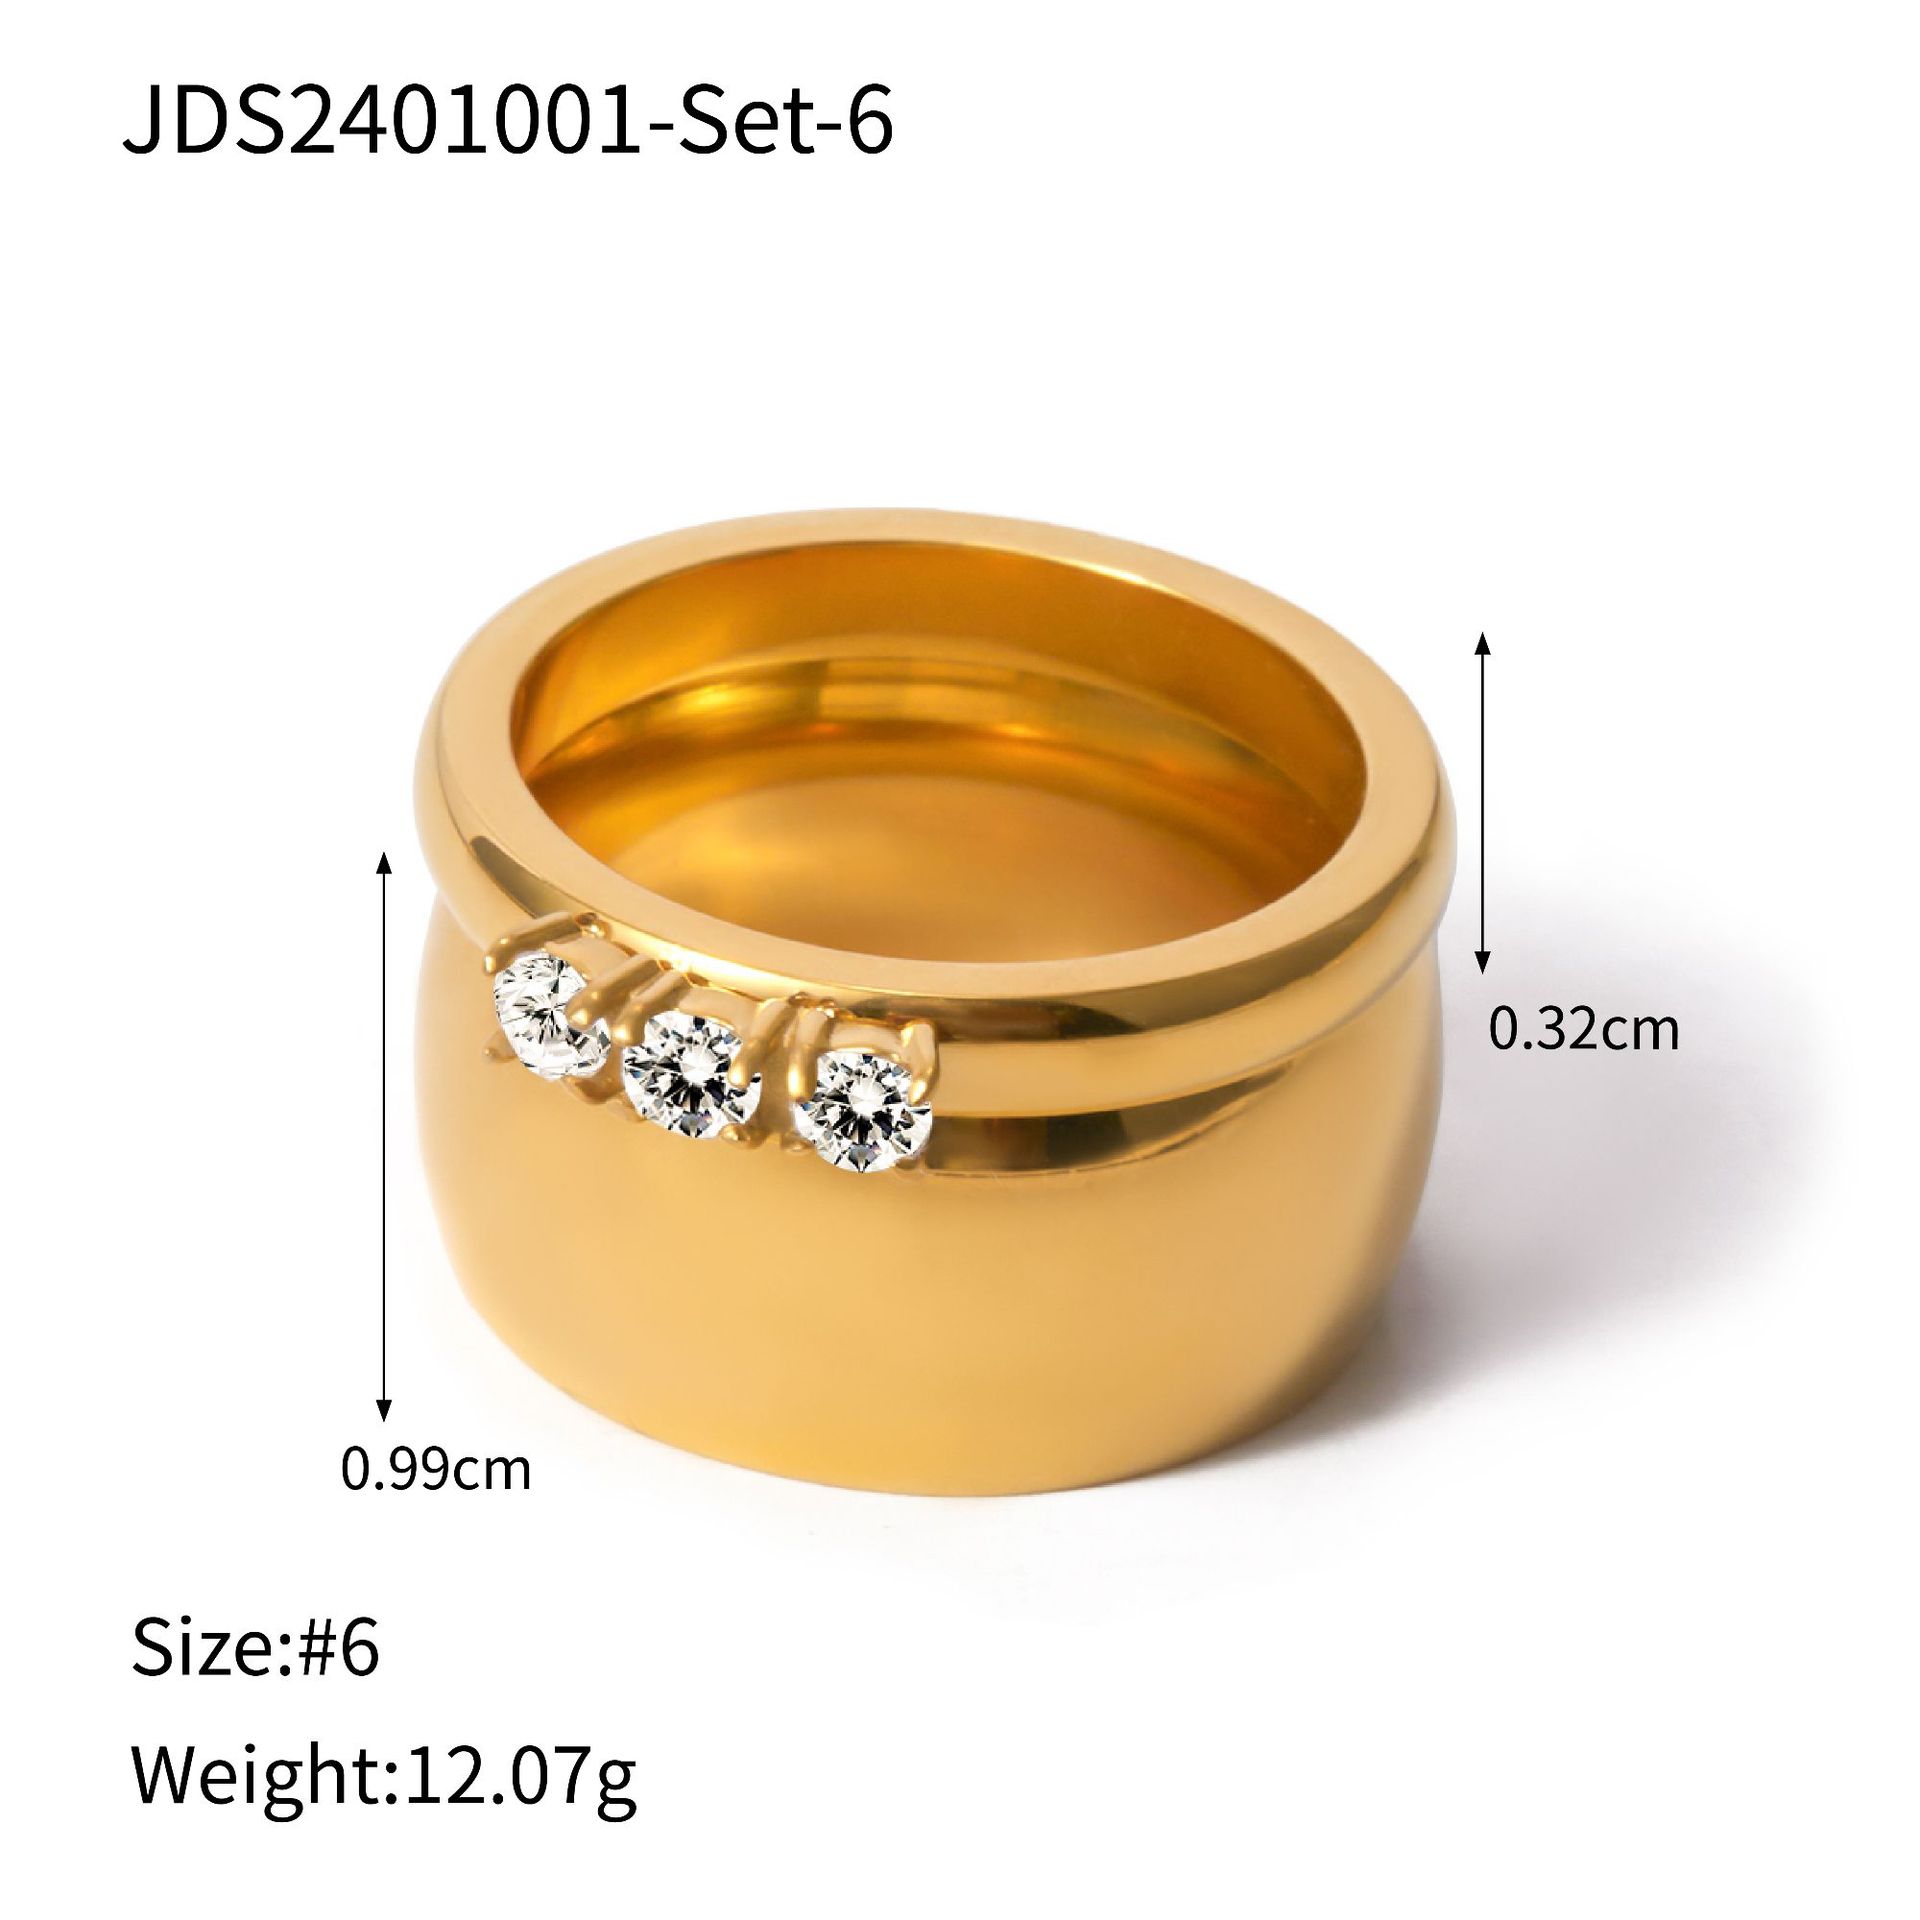 JDS2401001-Set-6